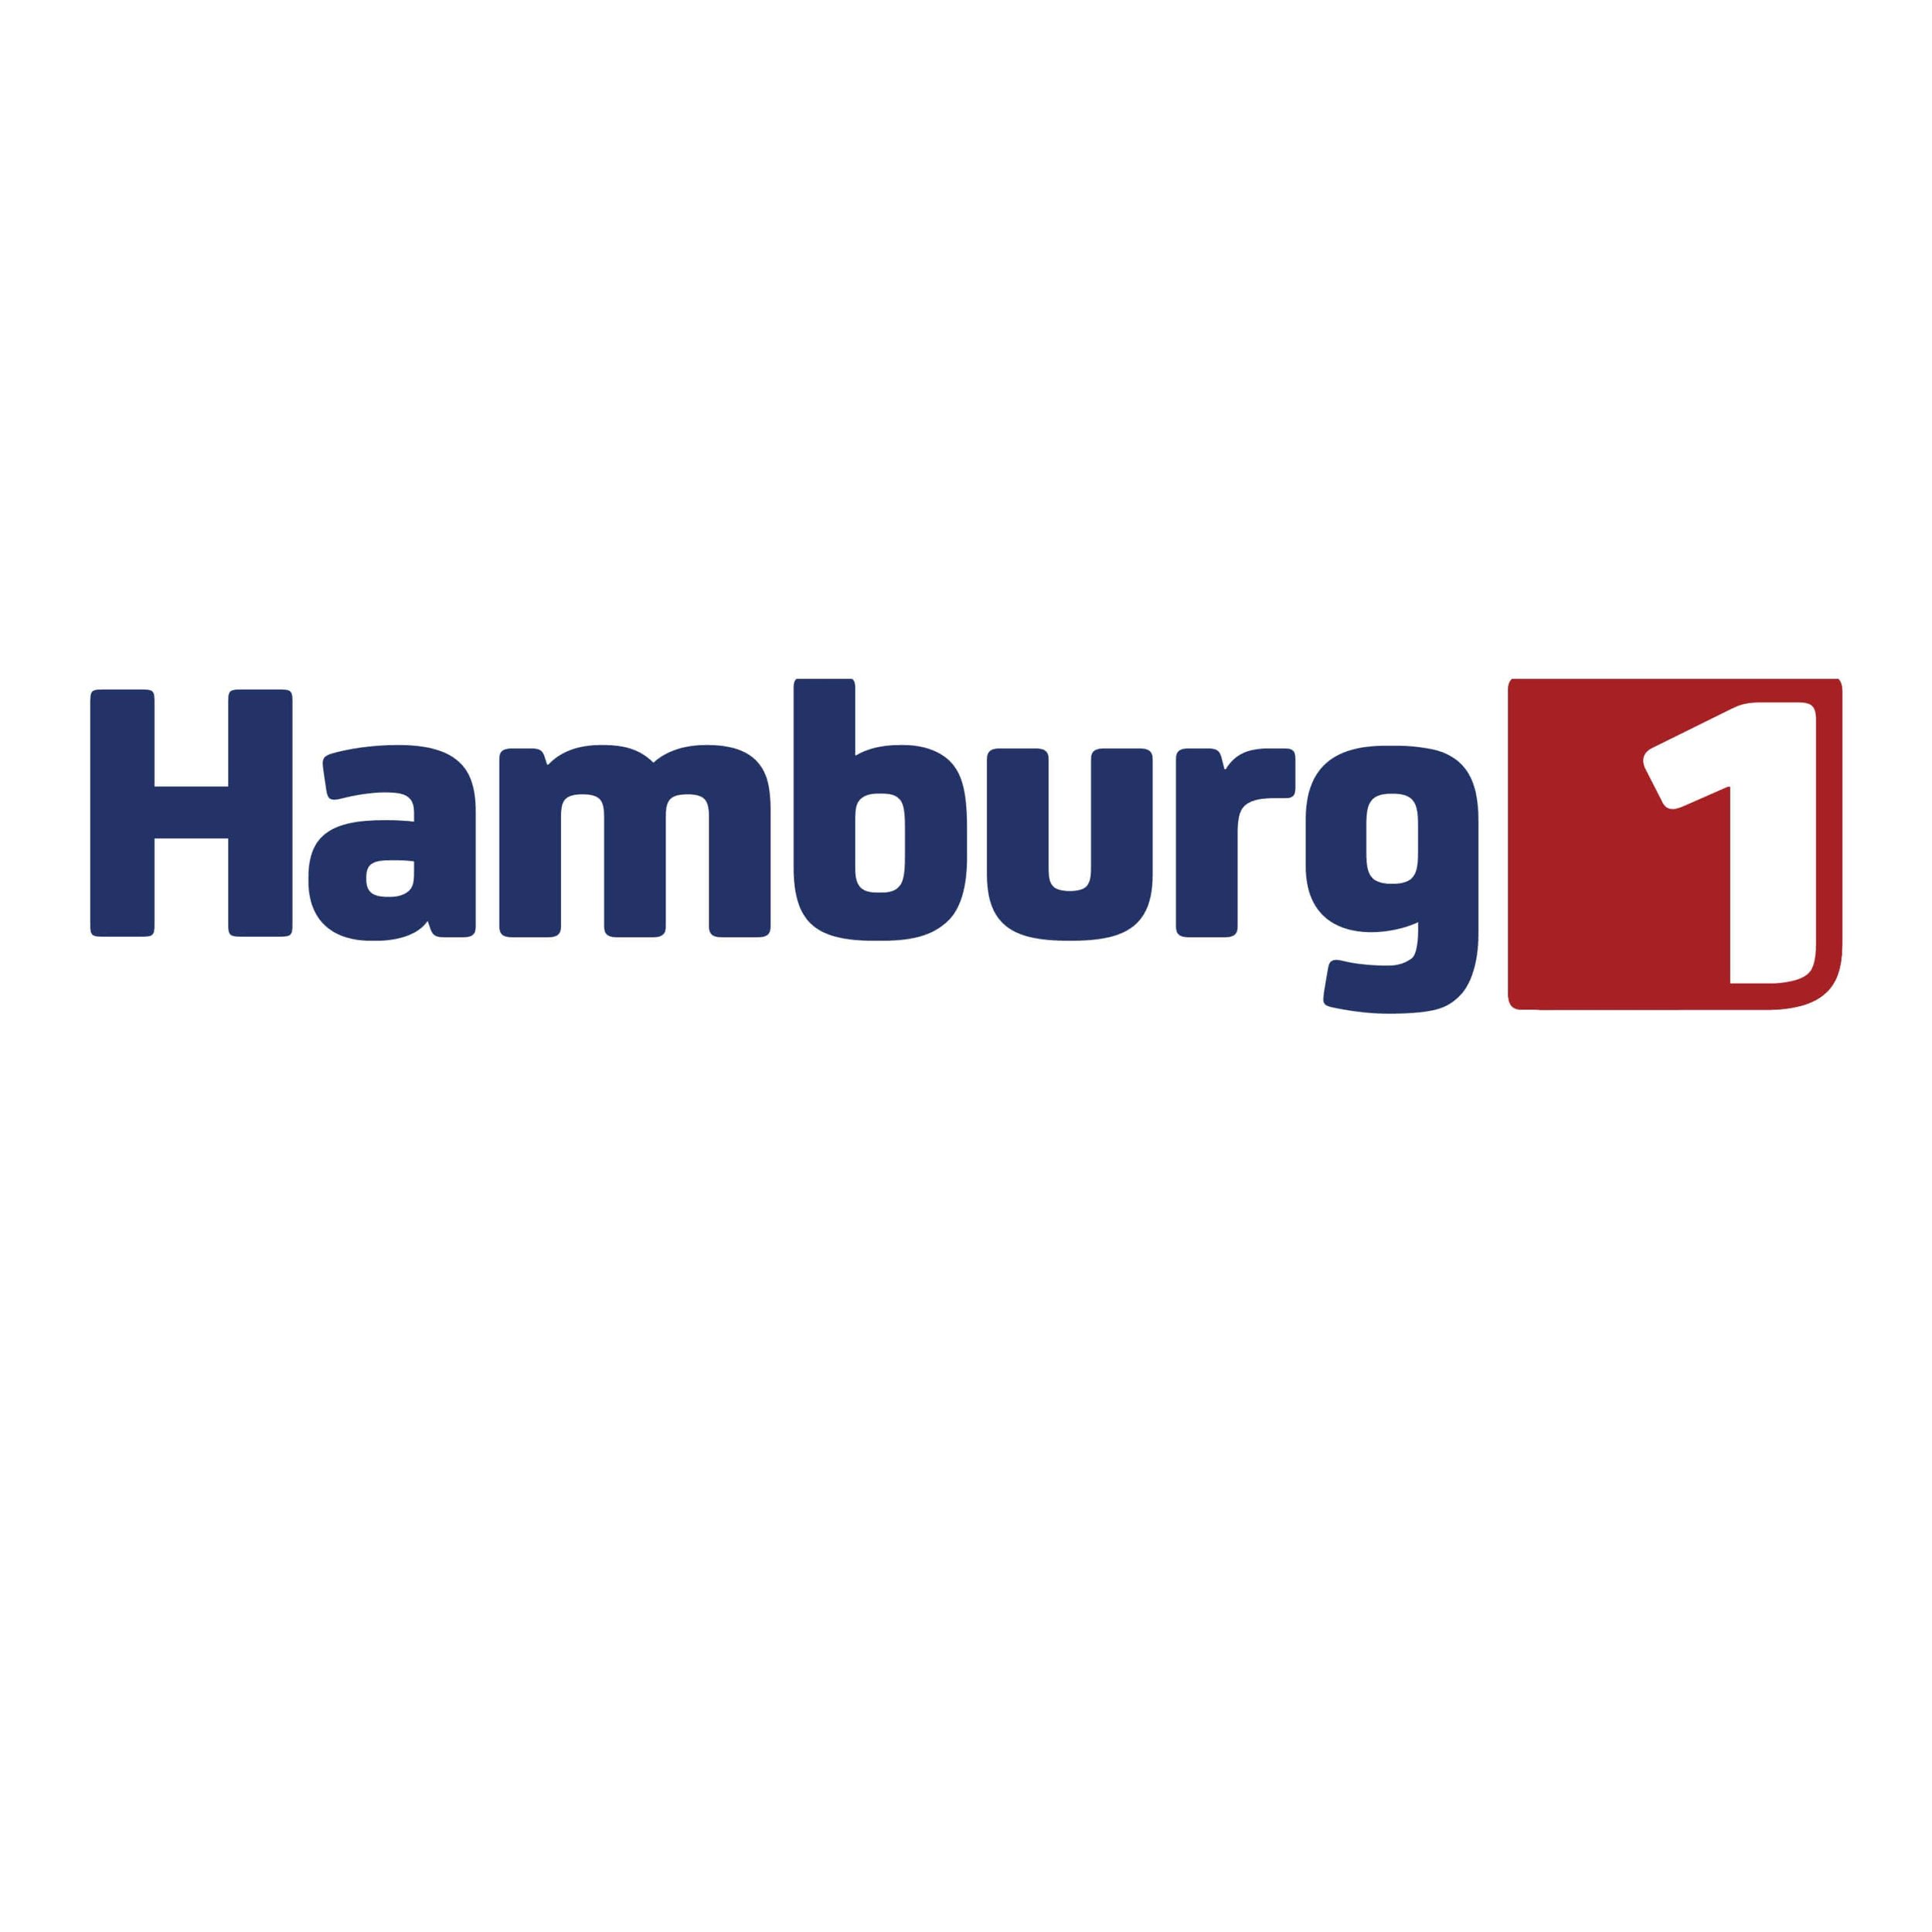 Hamburg 1 (Kopie) (Kopie)